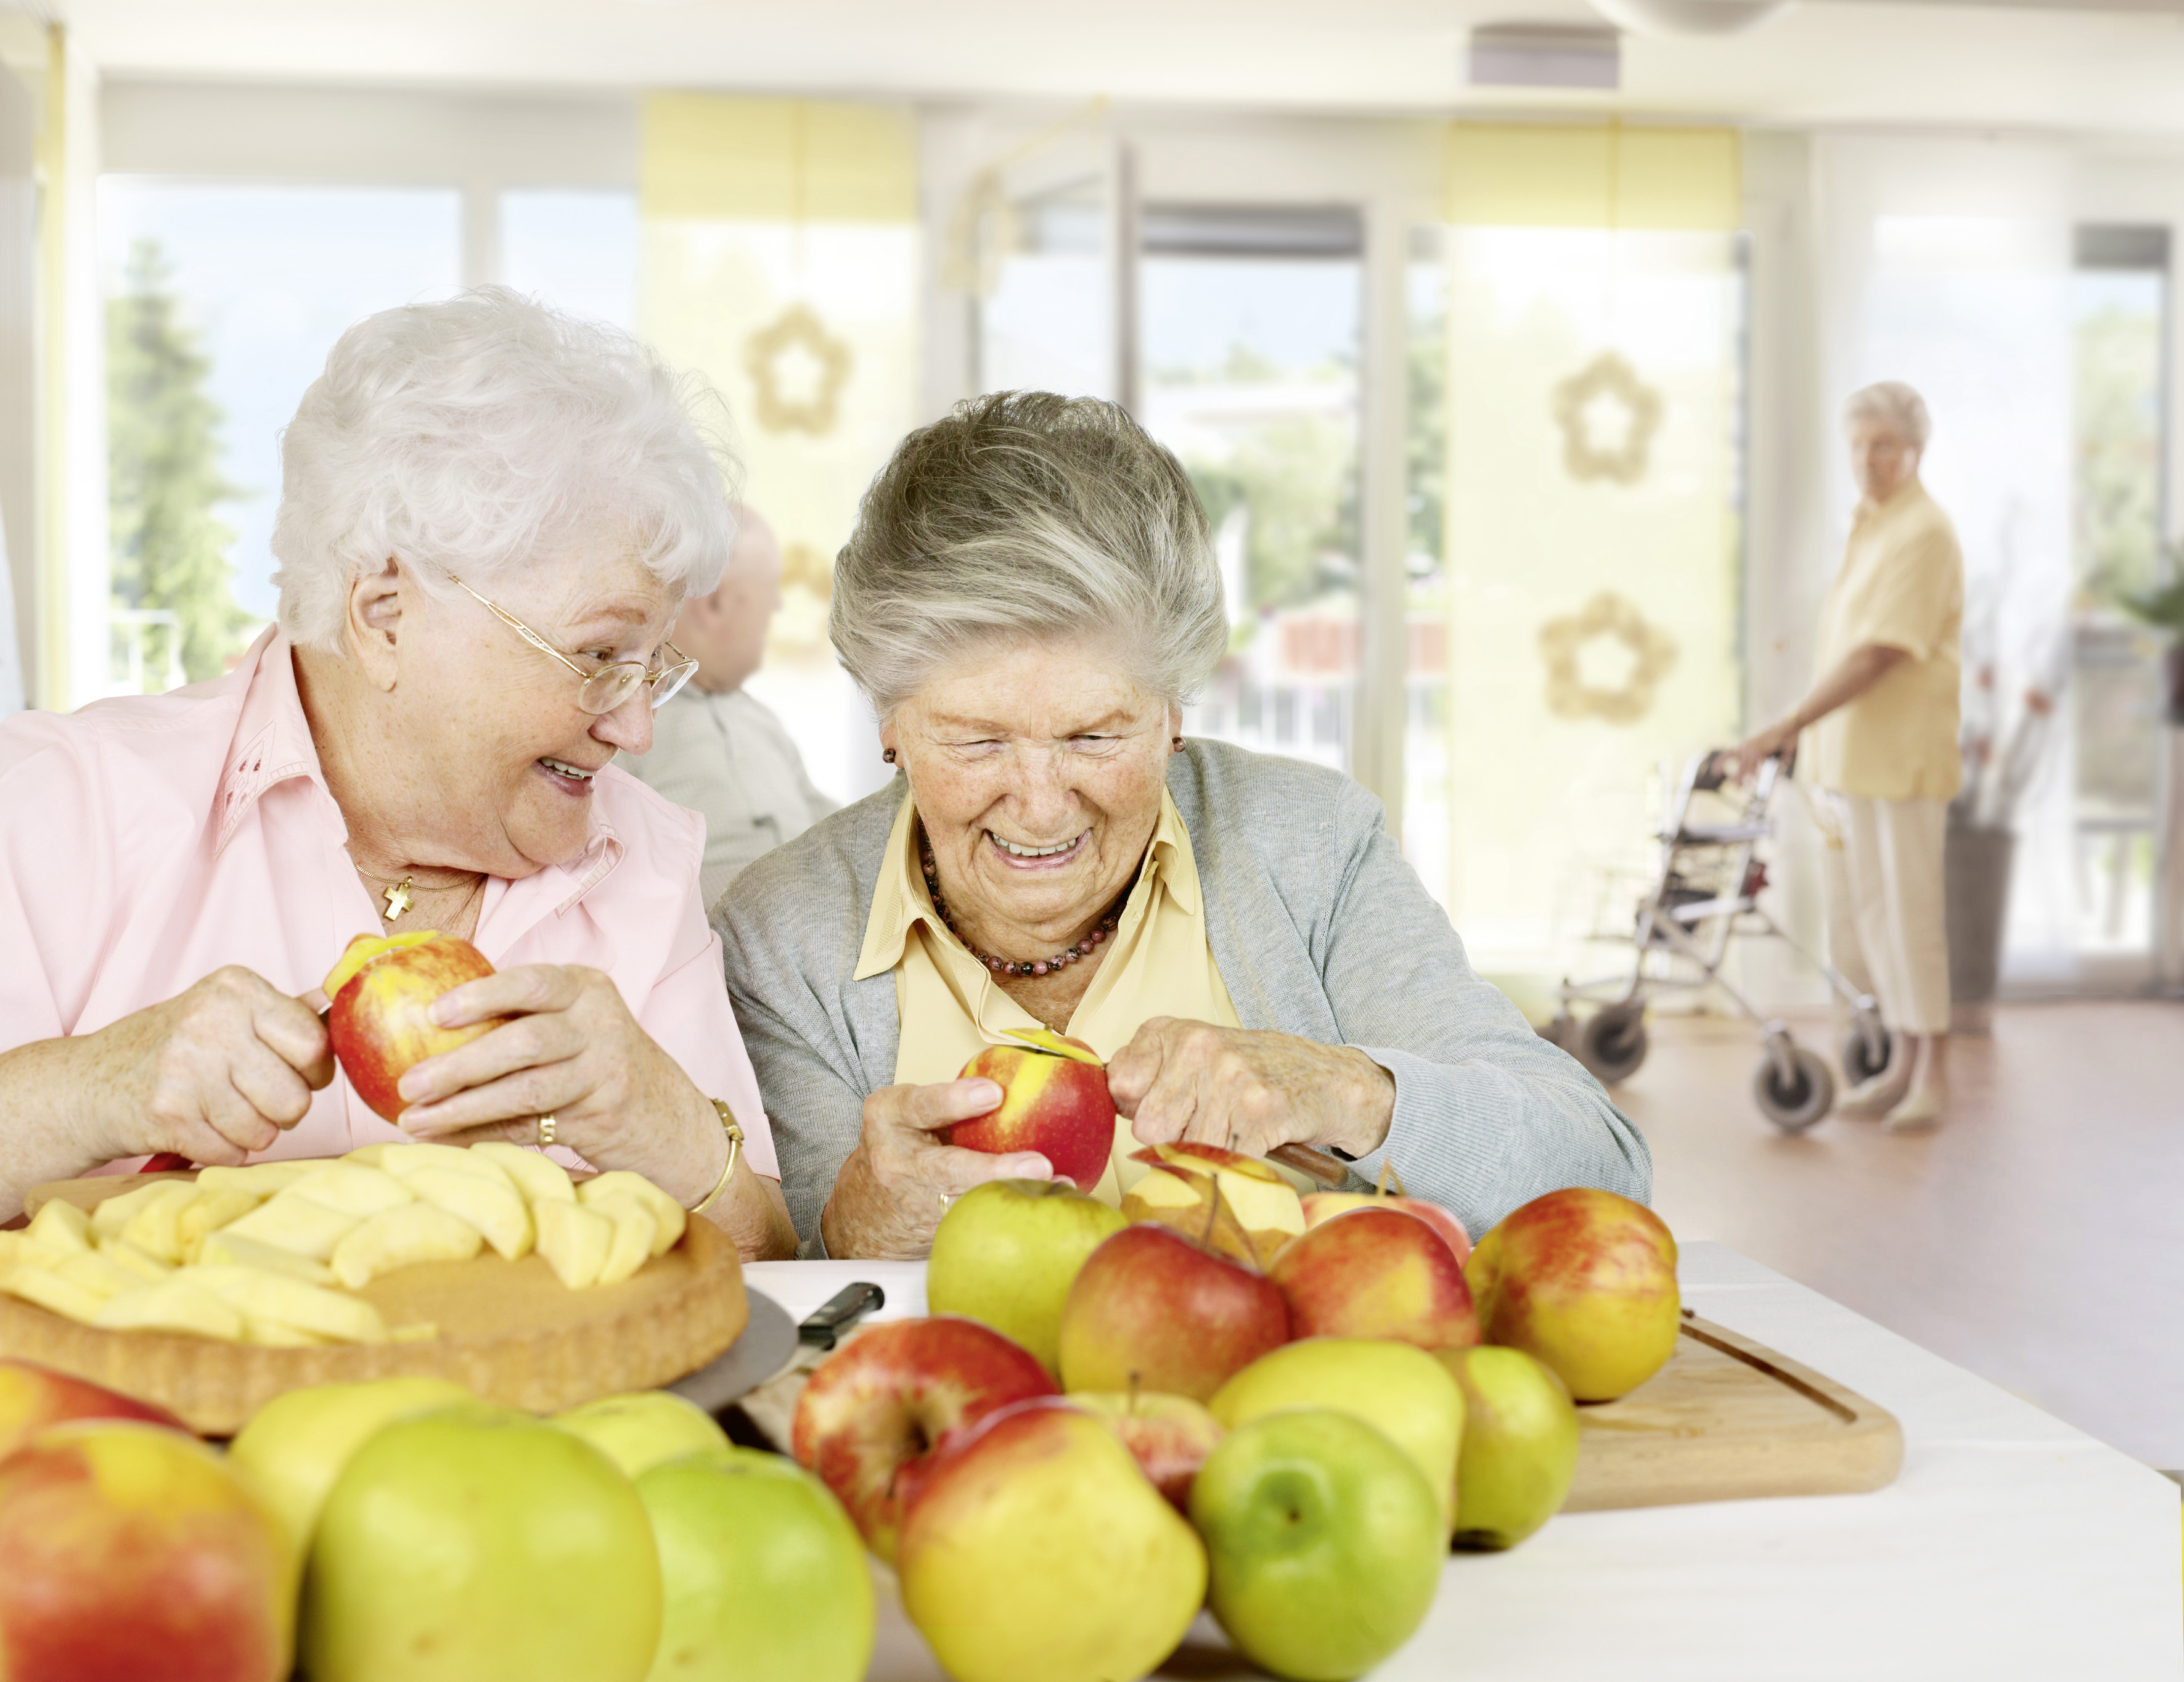 Zwei Seniorinnen in einem Heim schälen Äpfel,um einen Kuchenboden zu belegen.